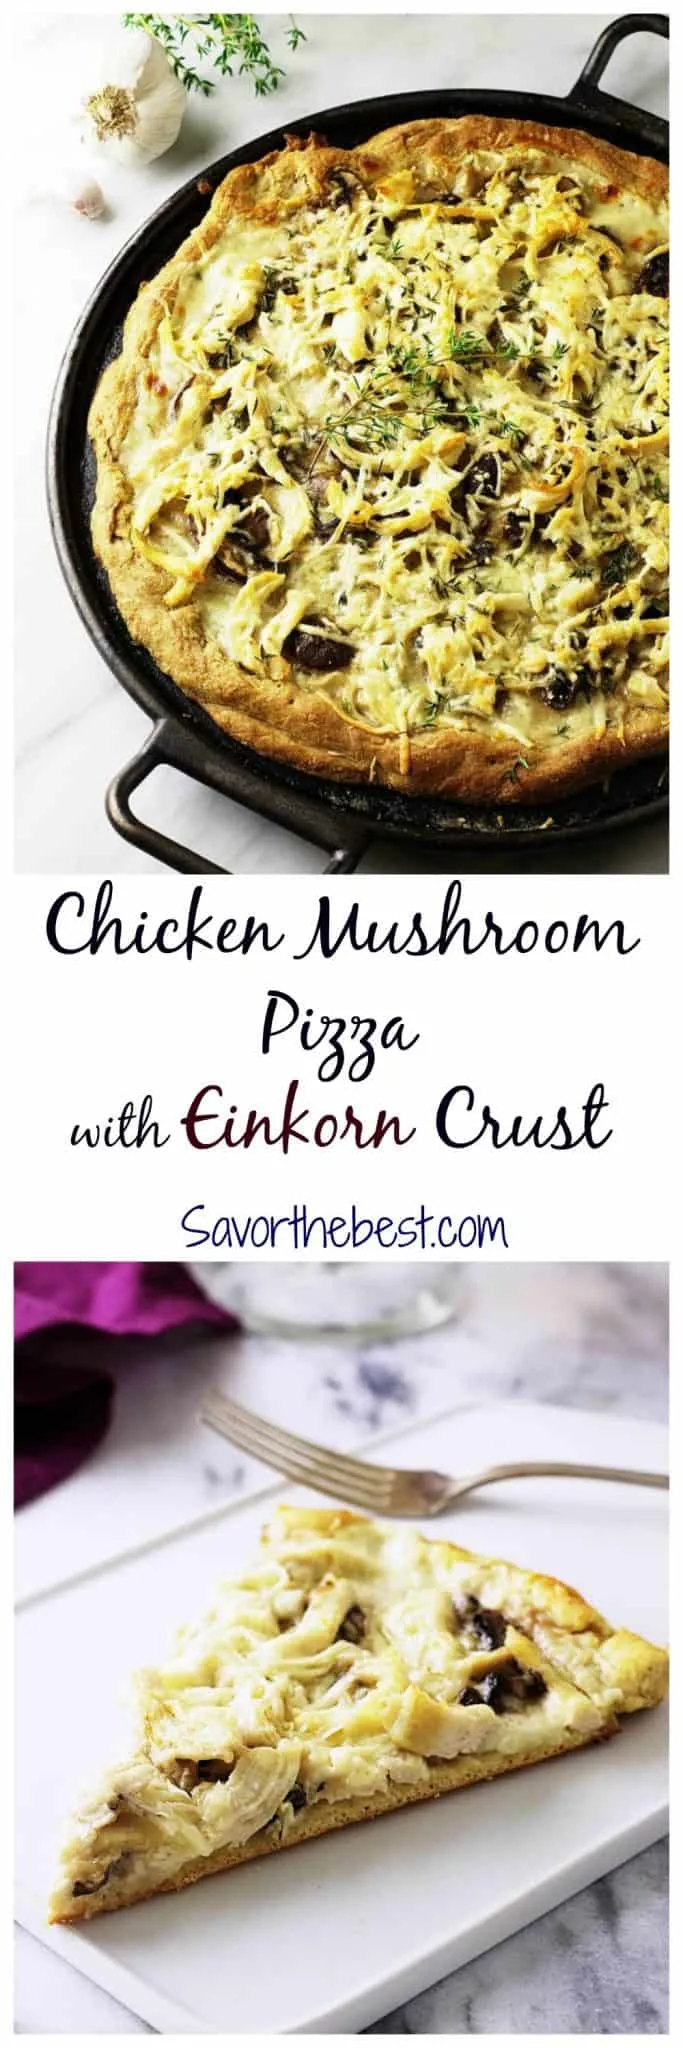 Pinterest pin for mushroom pizza 